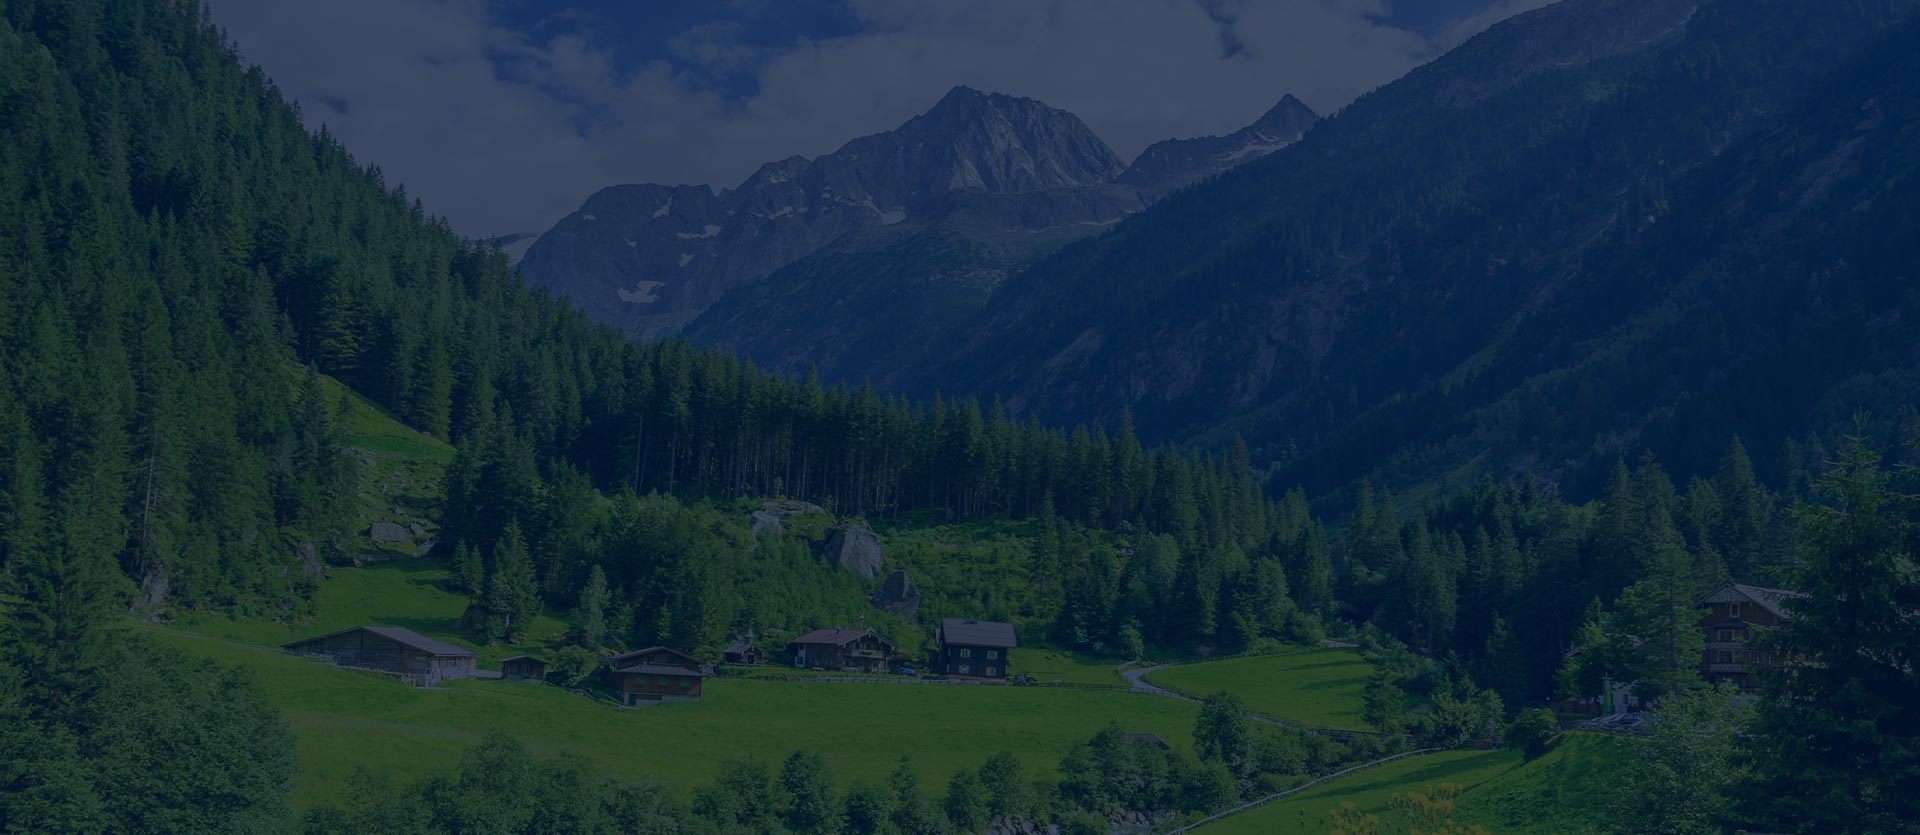 rakúske alpy na stránke Rodinné prídavky z Rakúska